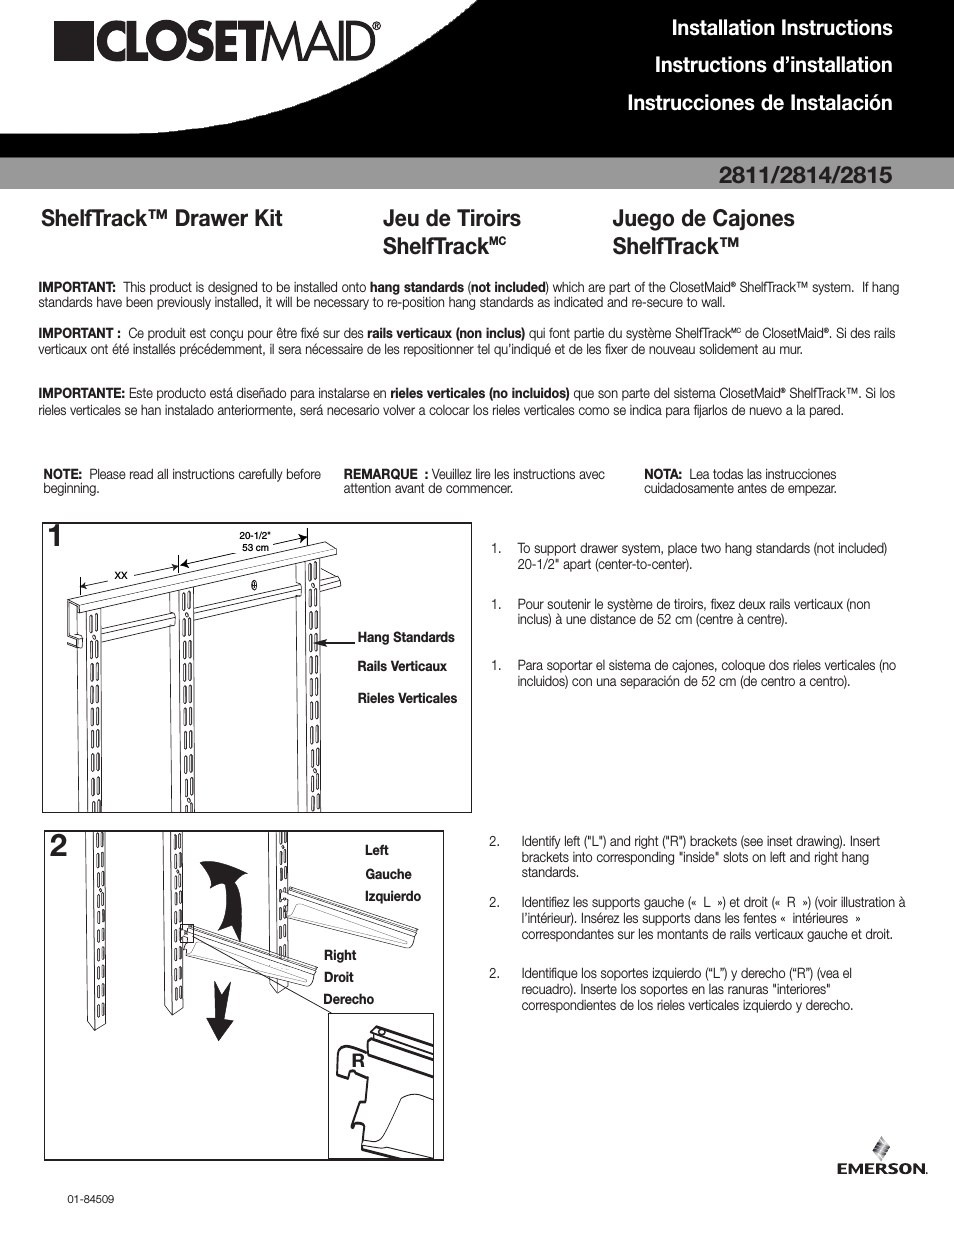 ShelfTrack Drawer Kit 2811